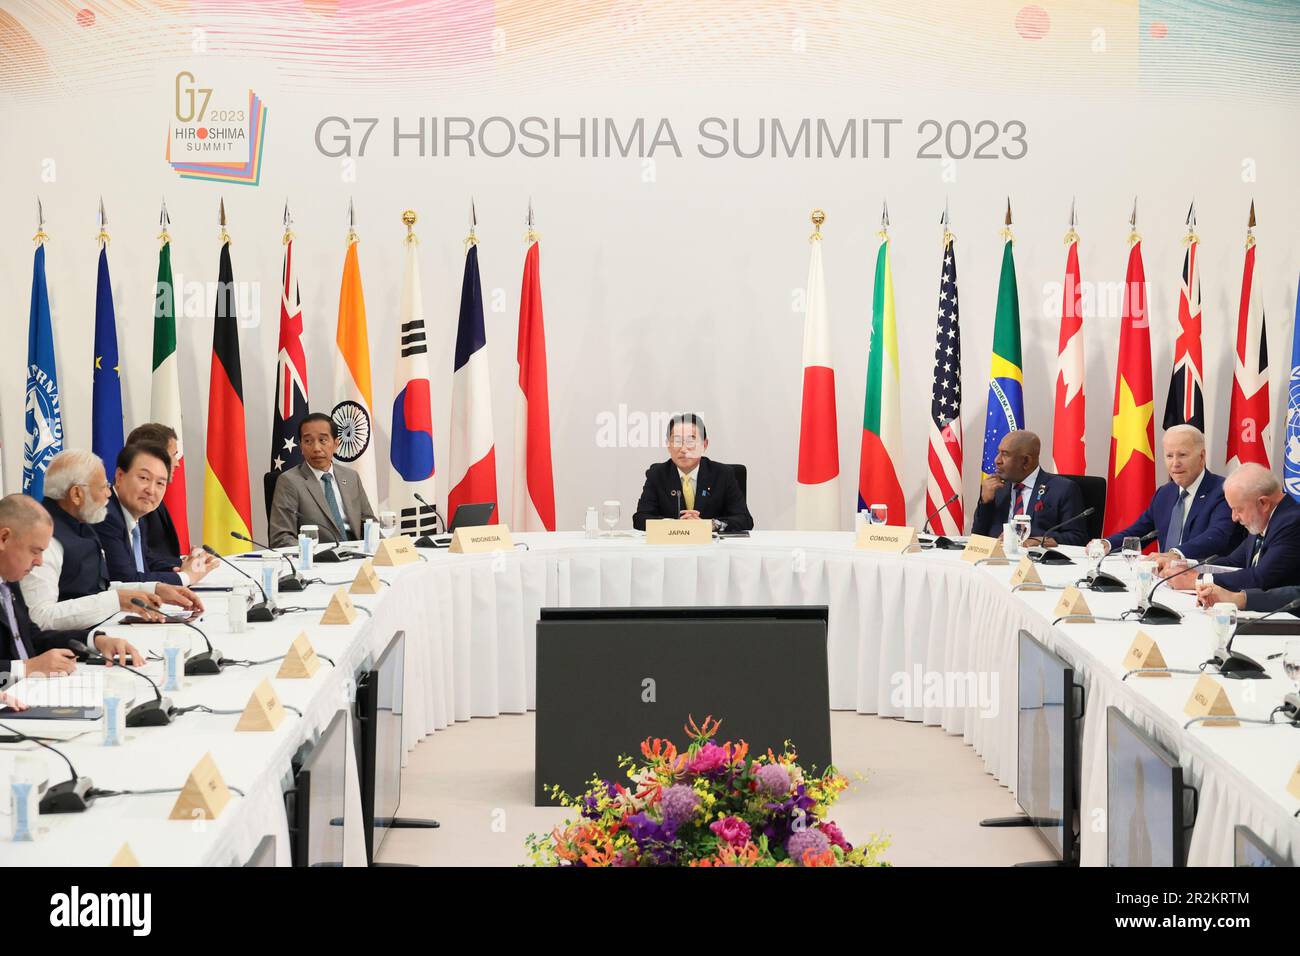 Hiroshima, Giappone. 20th maggio, 2023. I leader e i delegati partecipano alla seconda giornata del vertice G7 di sabato 20 maggio 2023 a Hiroshima, in Giappone. Il Giappone ospita il summit del G7 a Hiroshima dal 19-22 maggio. Foto di G7 Hiroshima Summit/ Credit: UPI/Alamy Live News Foto Stock